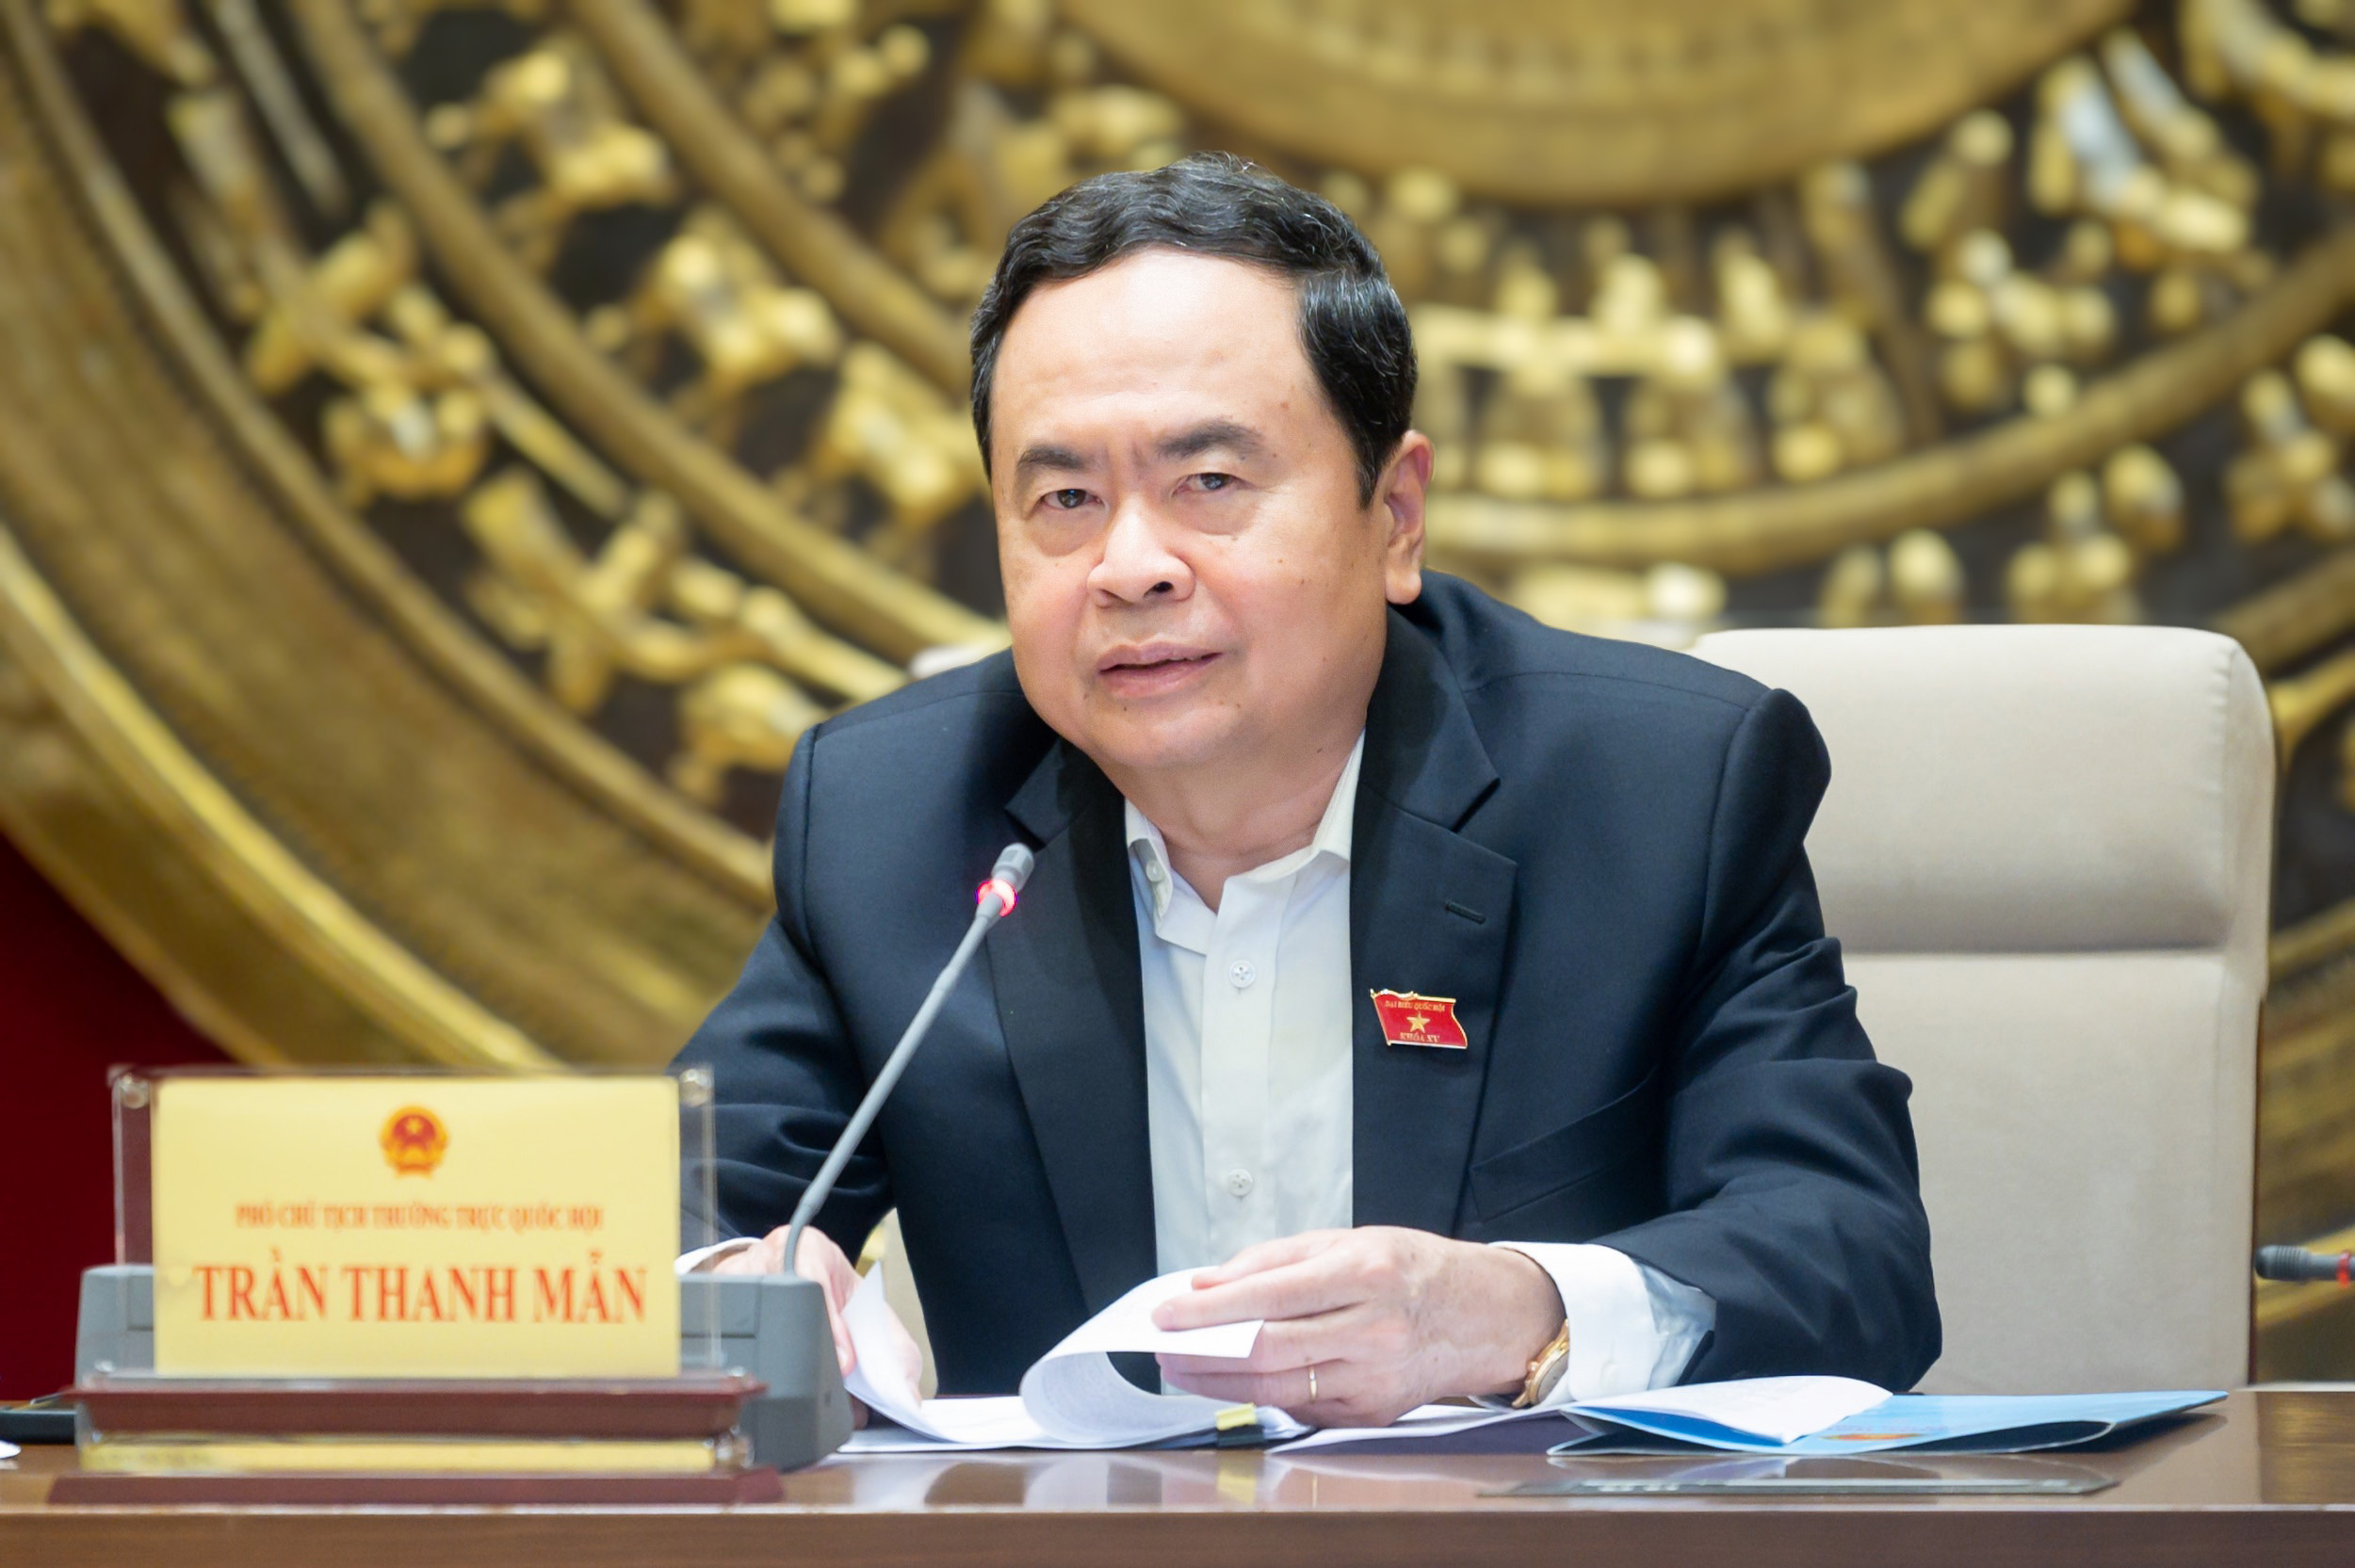 Ủy viên Bộ Chính trị Trần Thanh Mẫn được phân công điều hành Ủy ban Thường vụ Quốc hội và Quốc hội- Ảnh 1.